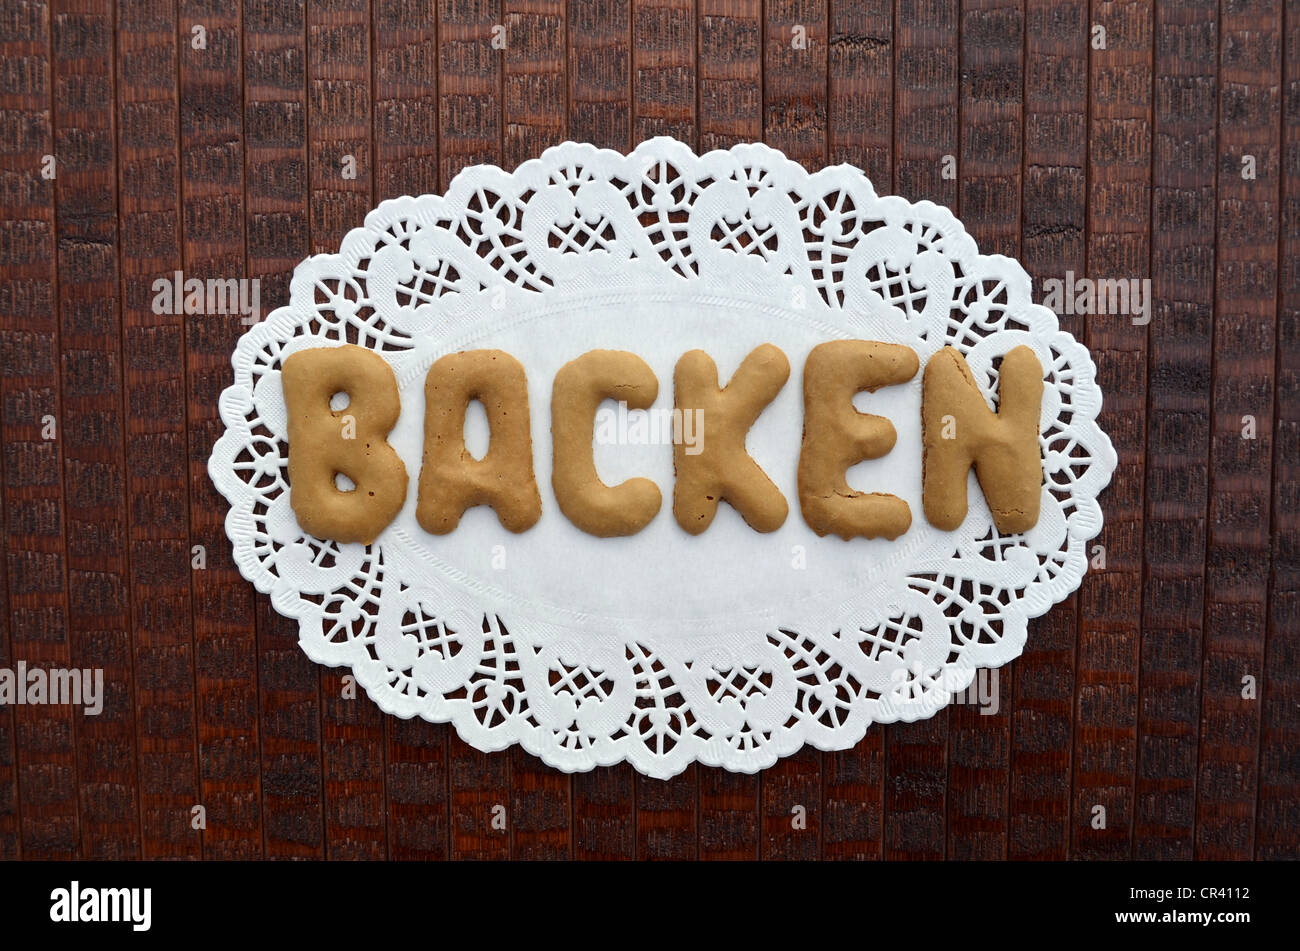 Backen, Allemand pour la pâtisserie, écrits avec un alphabet biscuits sur napperon papier Banque D'Images